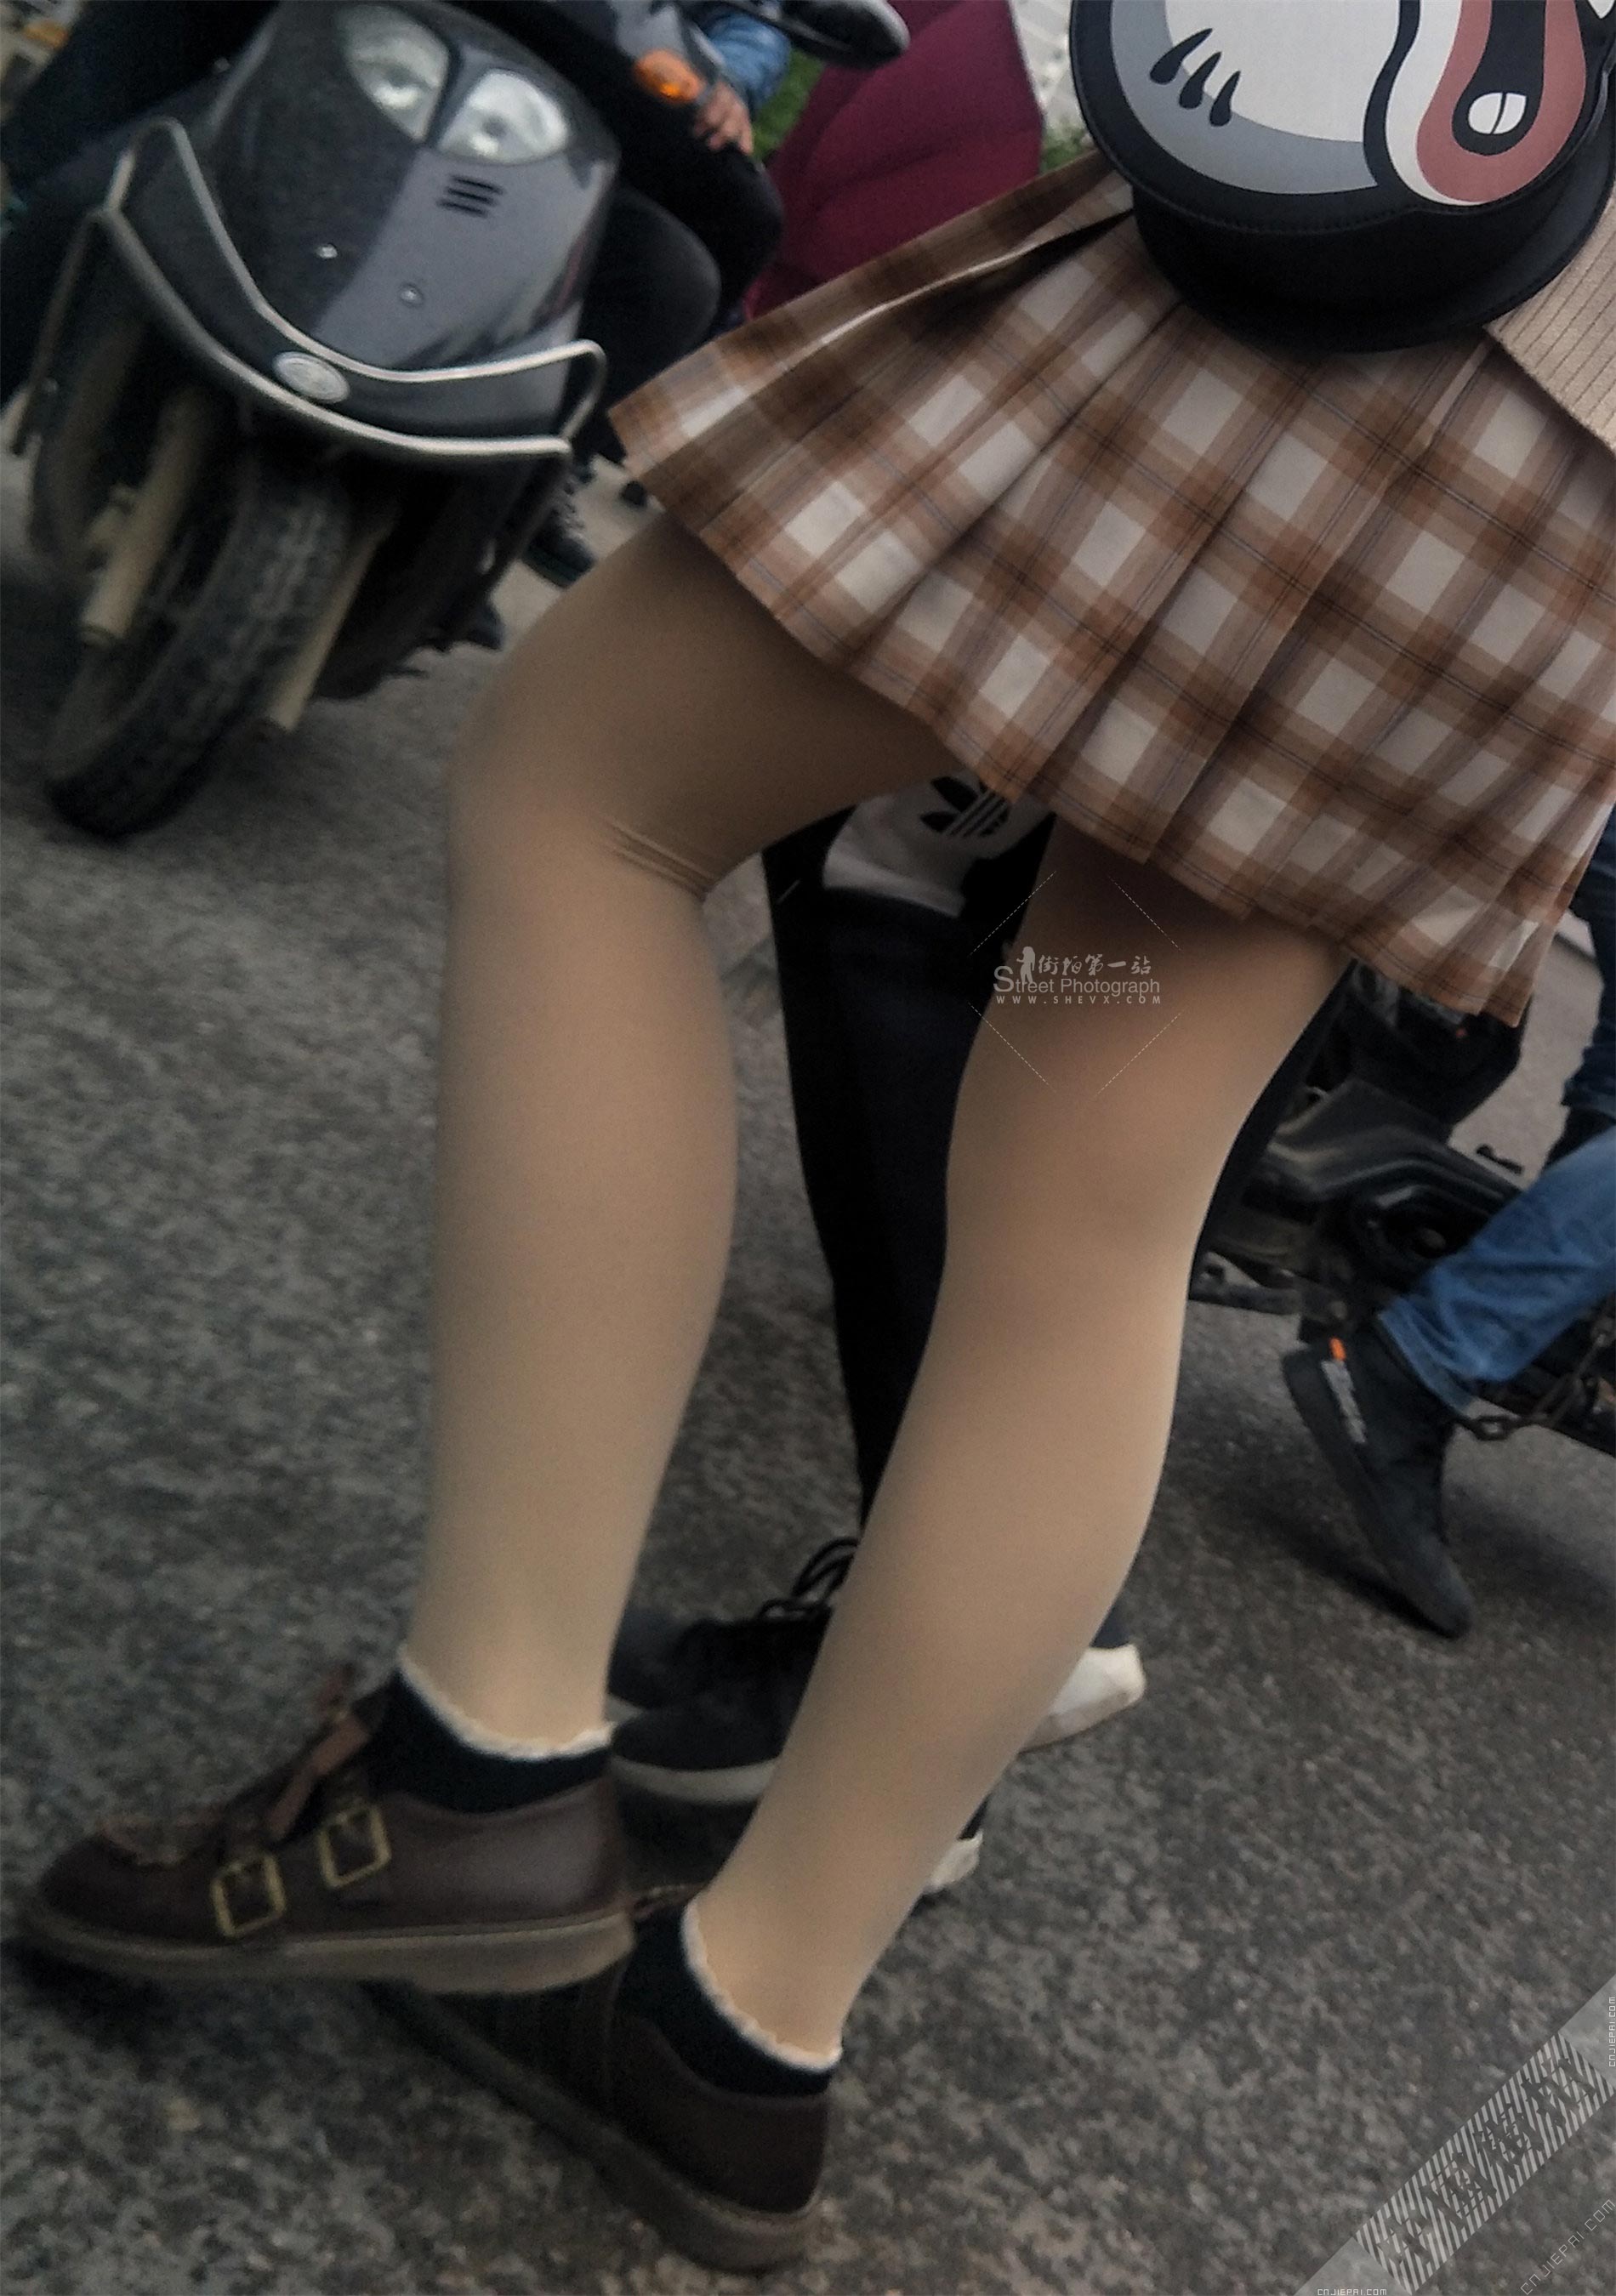 格子短裙少妇，厚肉丝美腿高清特写 图8